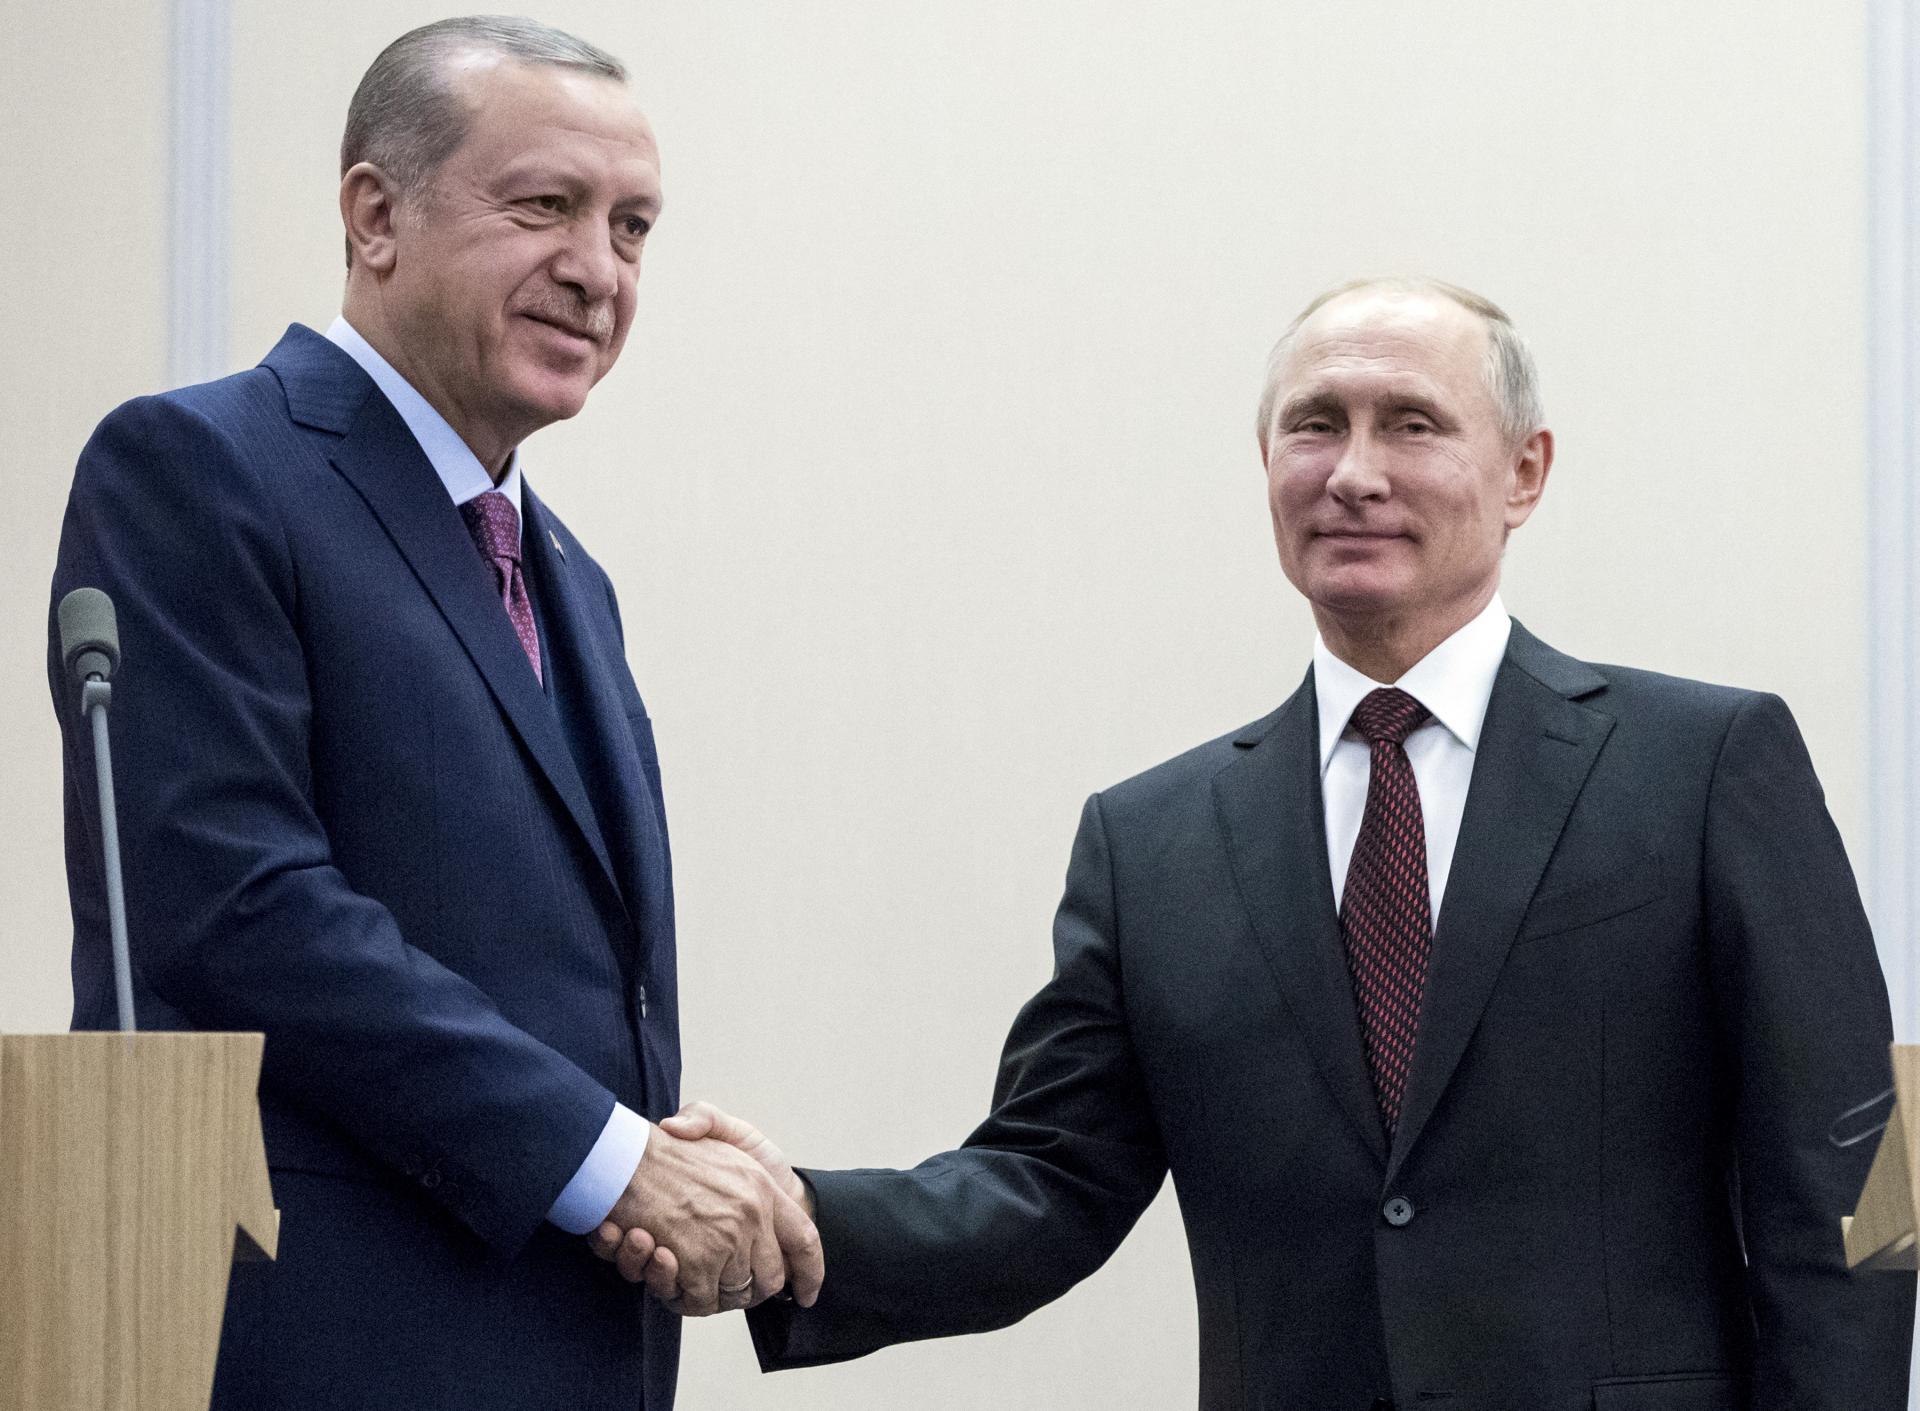 Turecko ťaží z toho, že nemá sankcie proti Rusku. Západu sa to nepáči